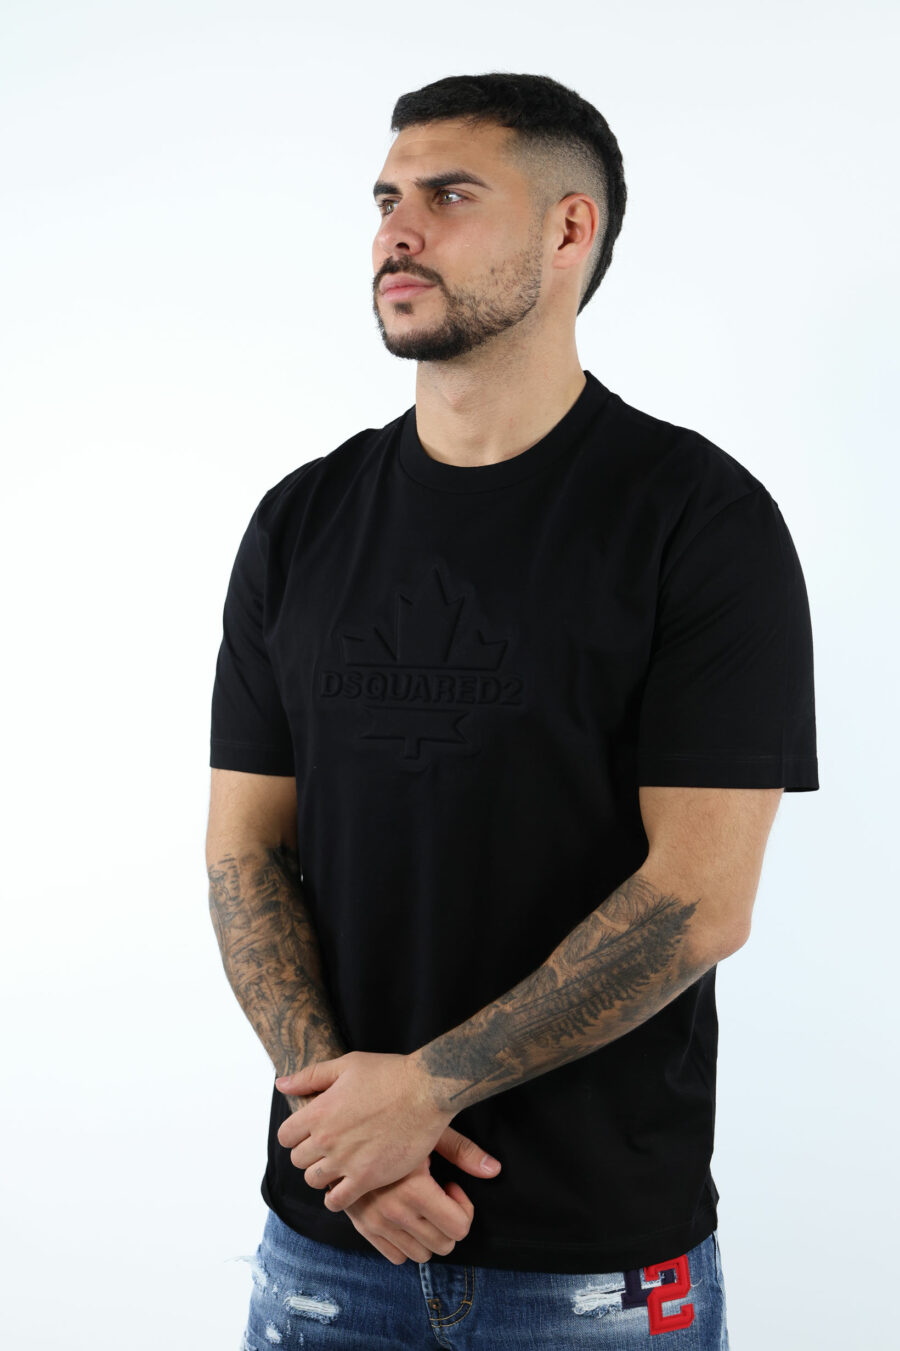 Camiseta negra con maxilogo hoja monocromático en relieve - 106857